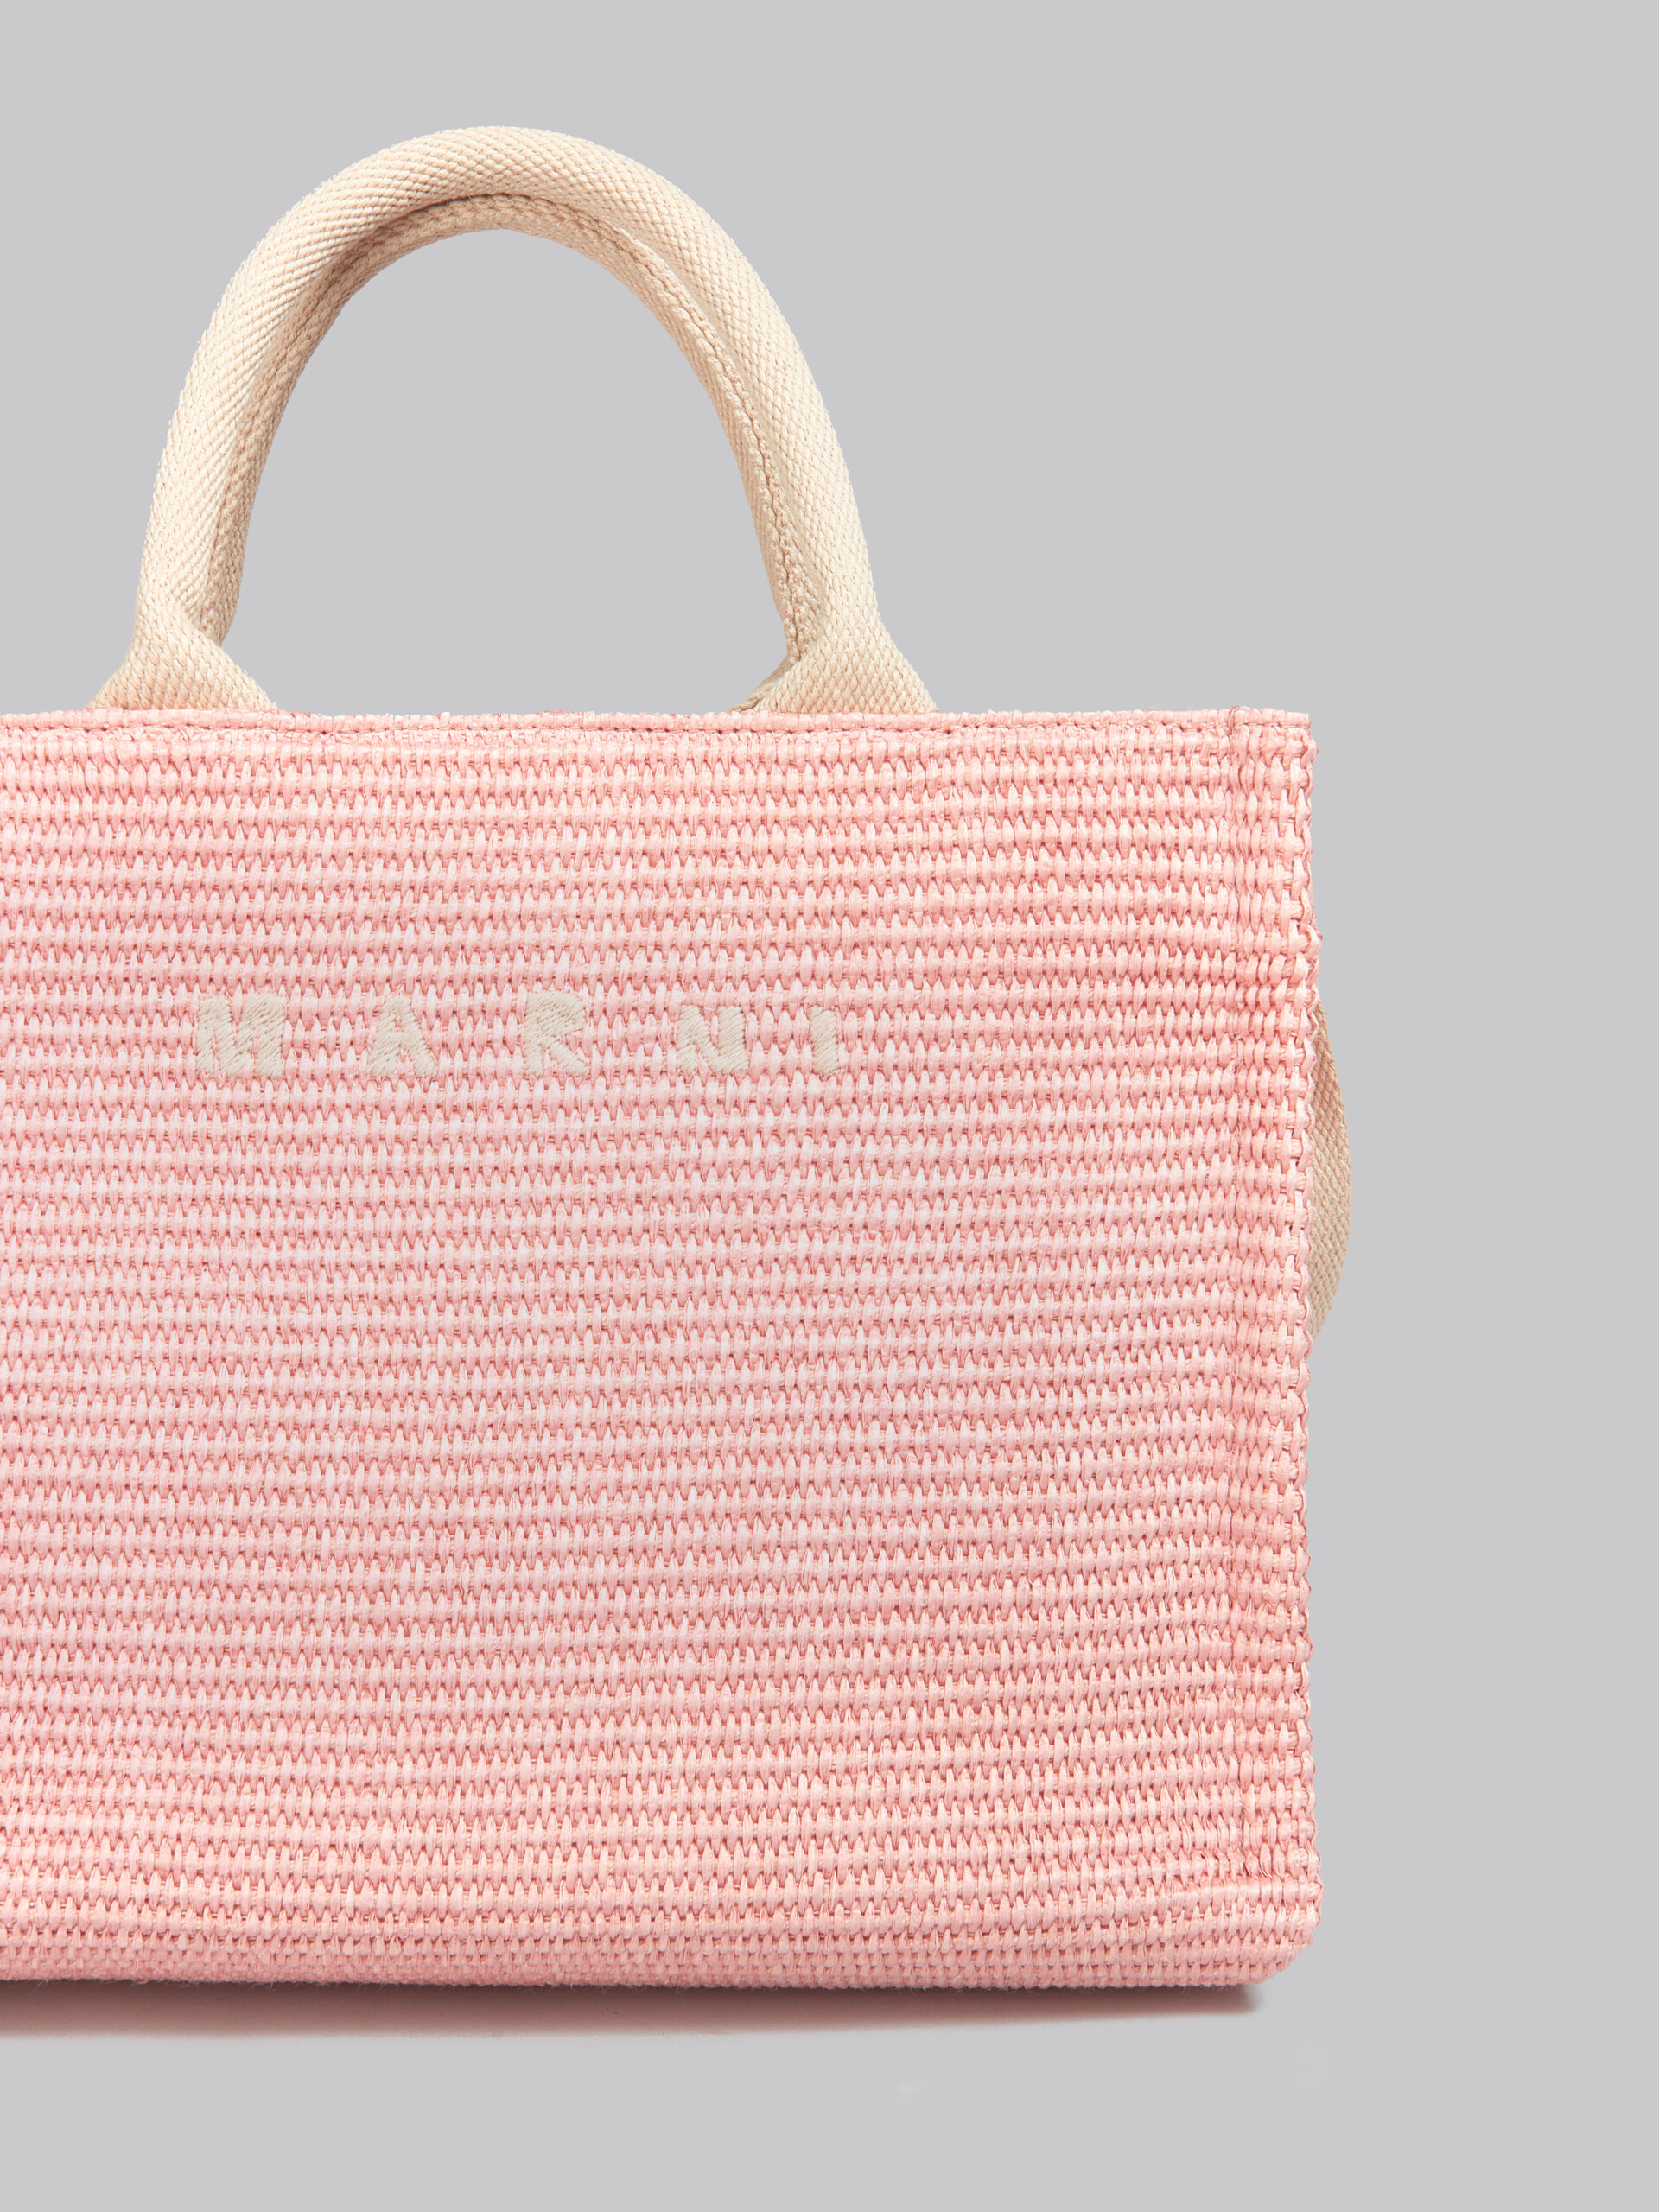 Tote Bag Piccola in tessuto effetto rafia lilla - Borse shopping - Image 5